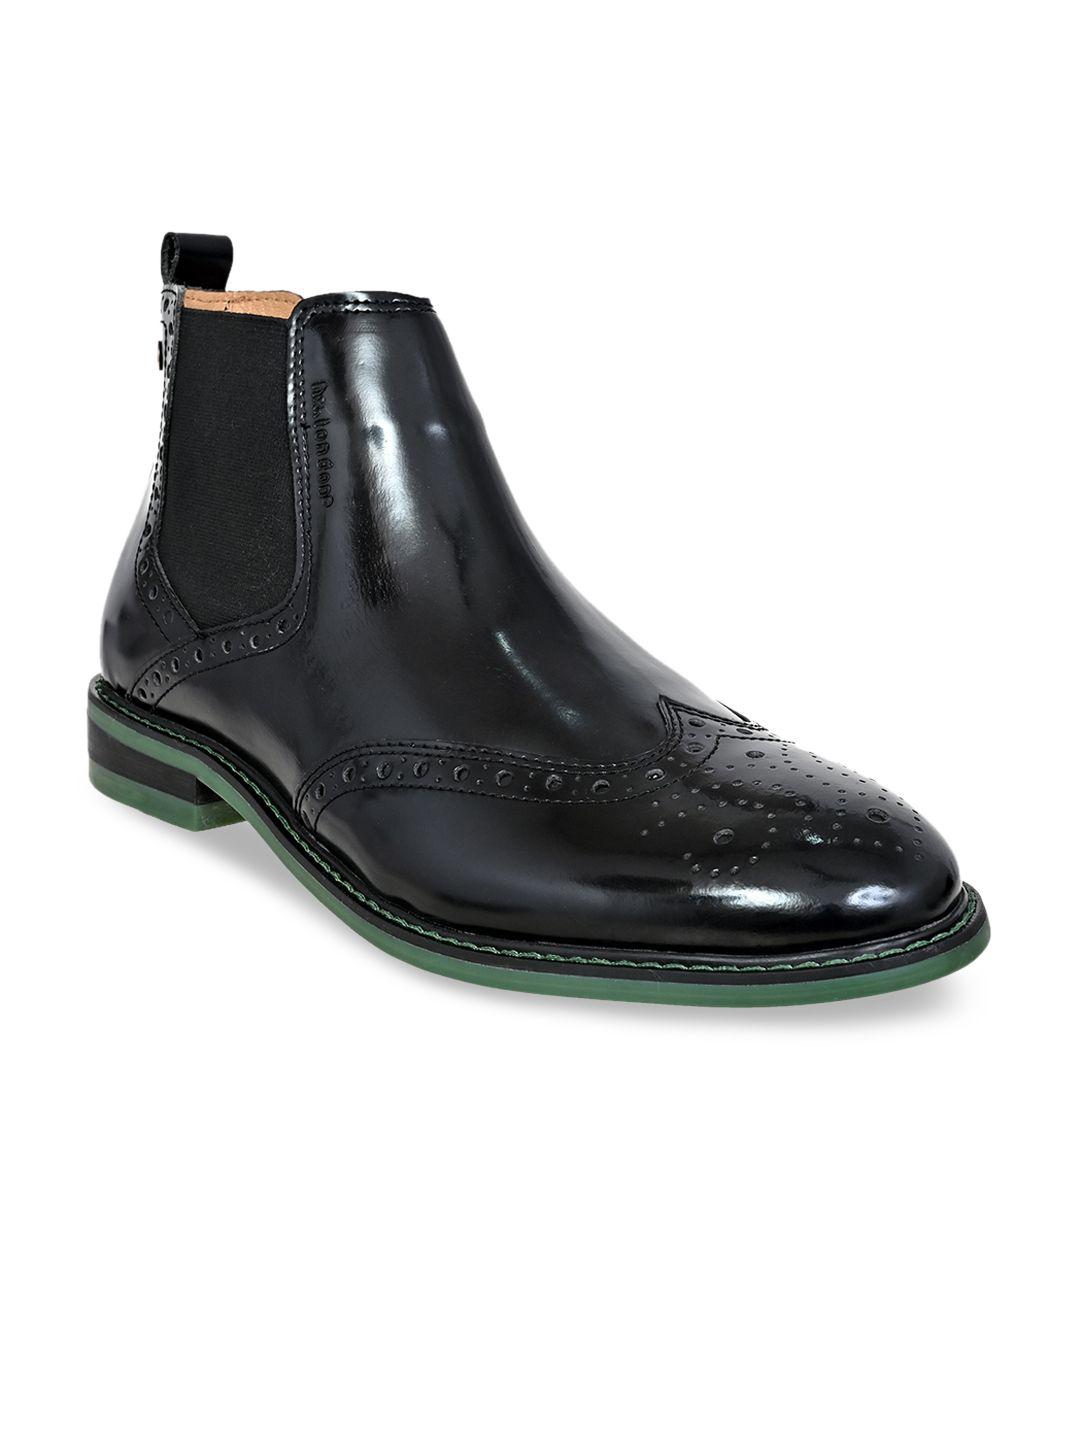 hx london men mid top textured leather block heel brogue regular boots